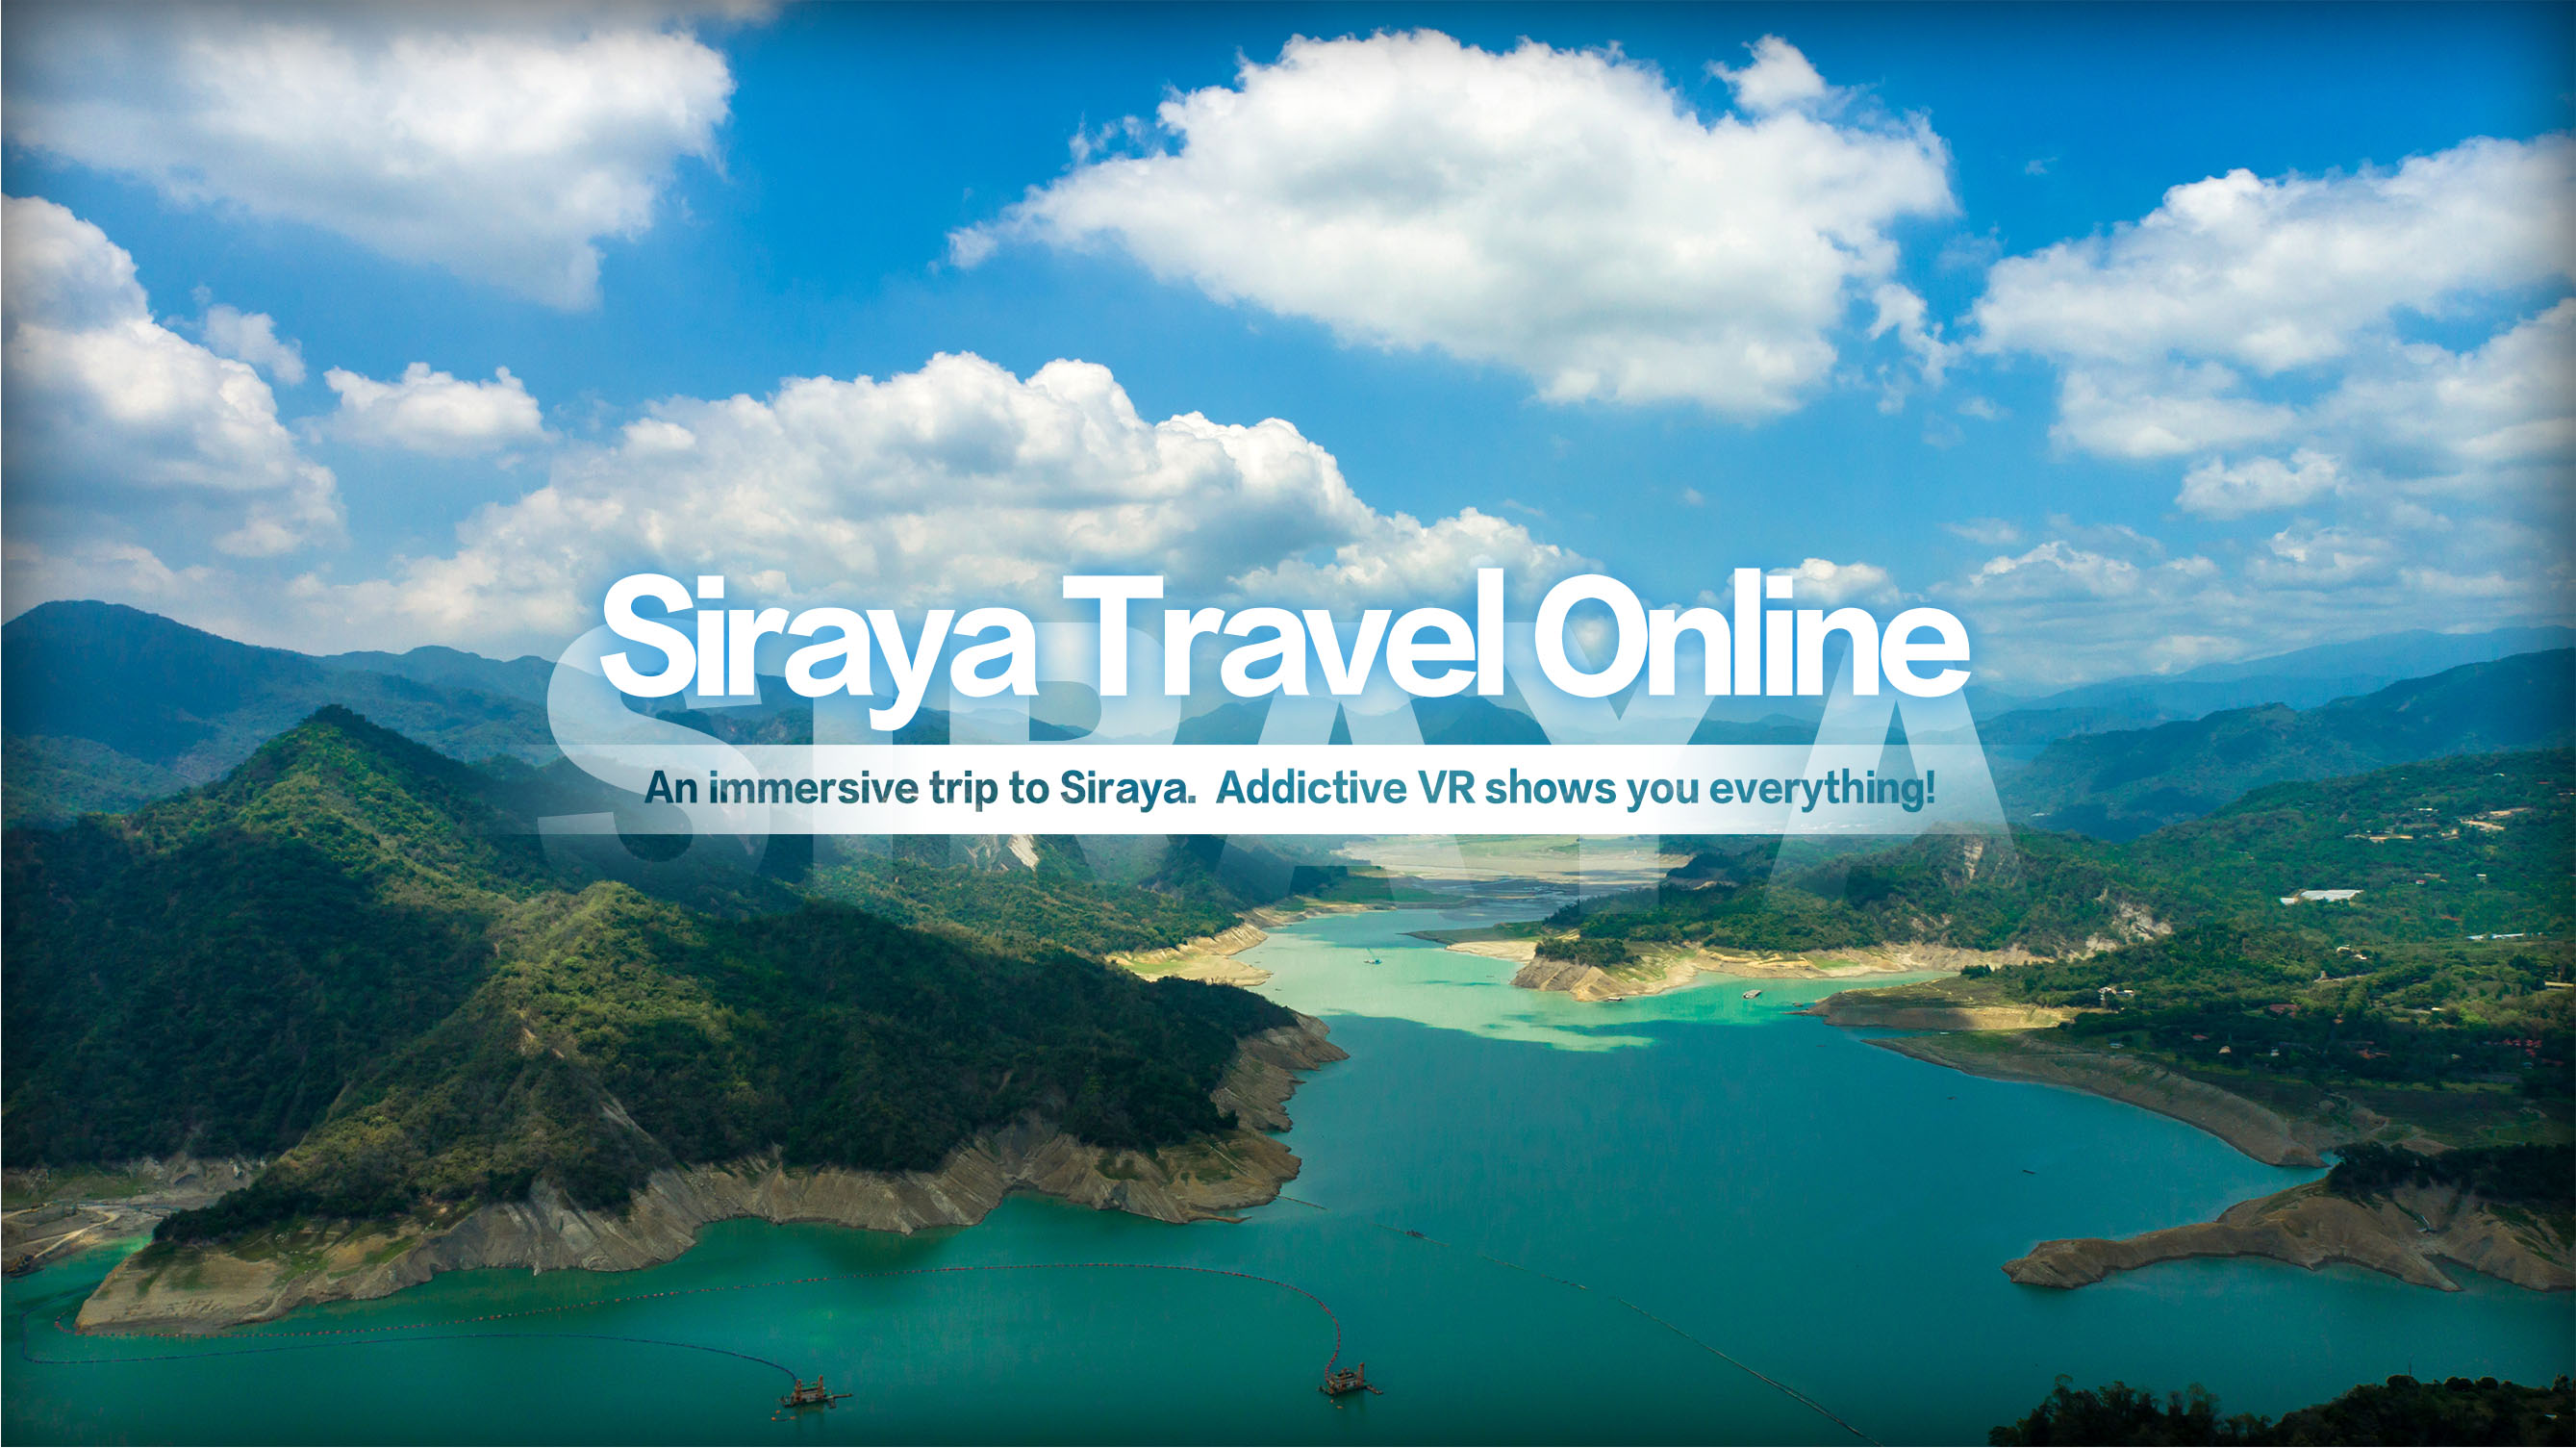 Siraya Travel Online